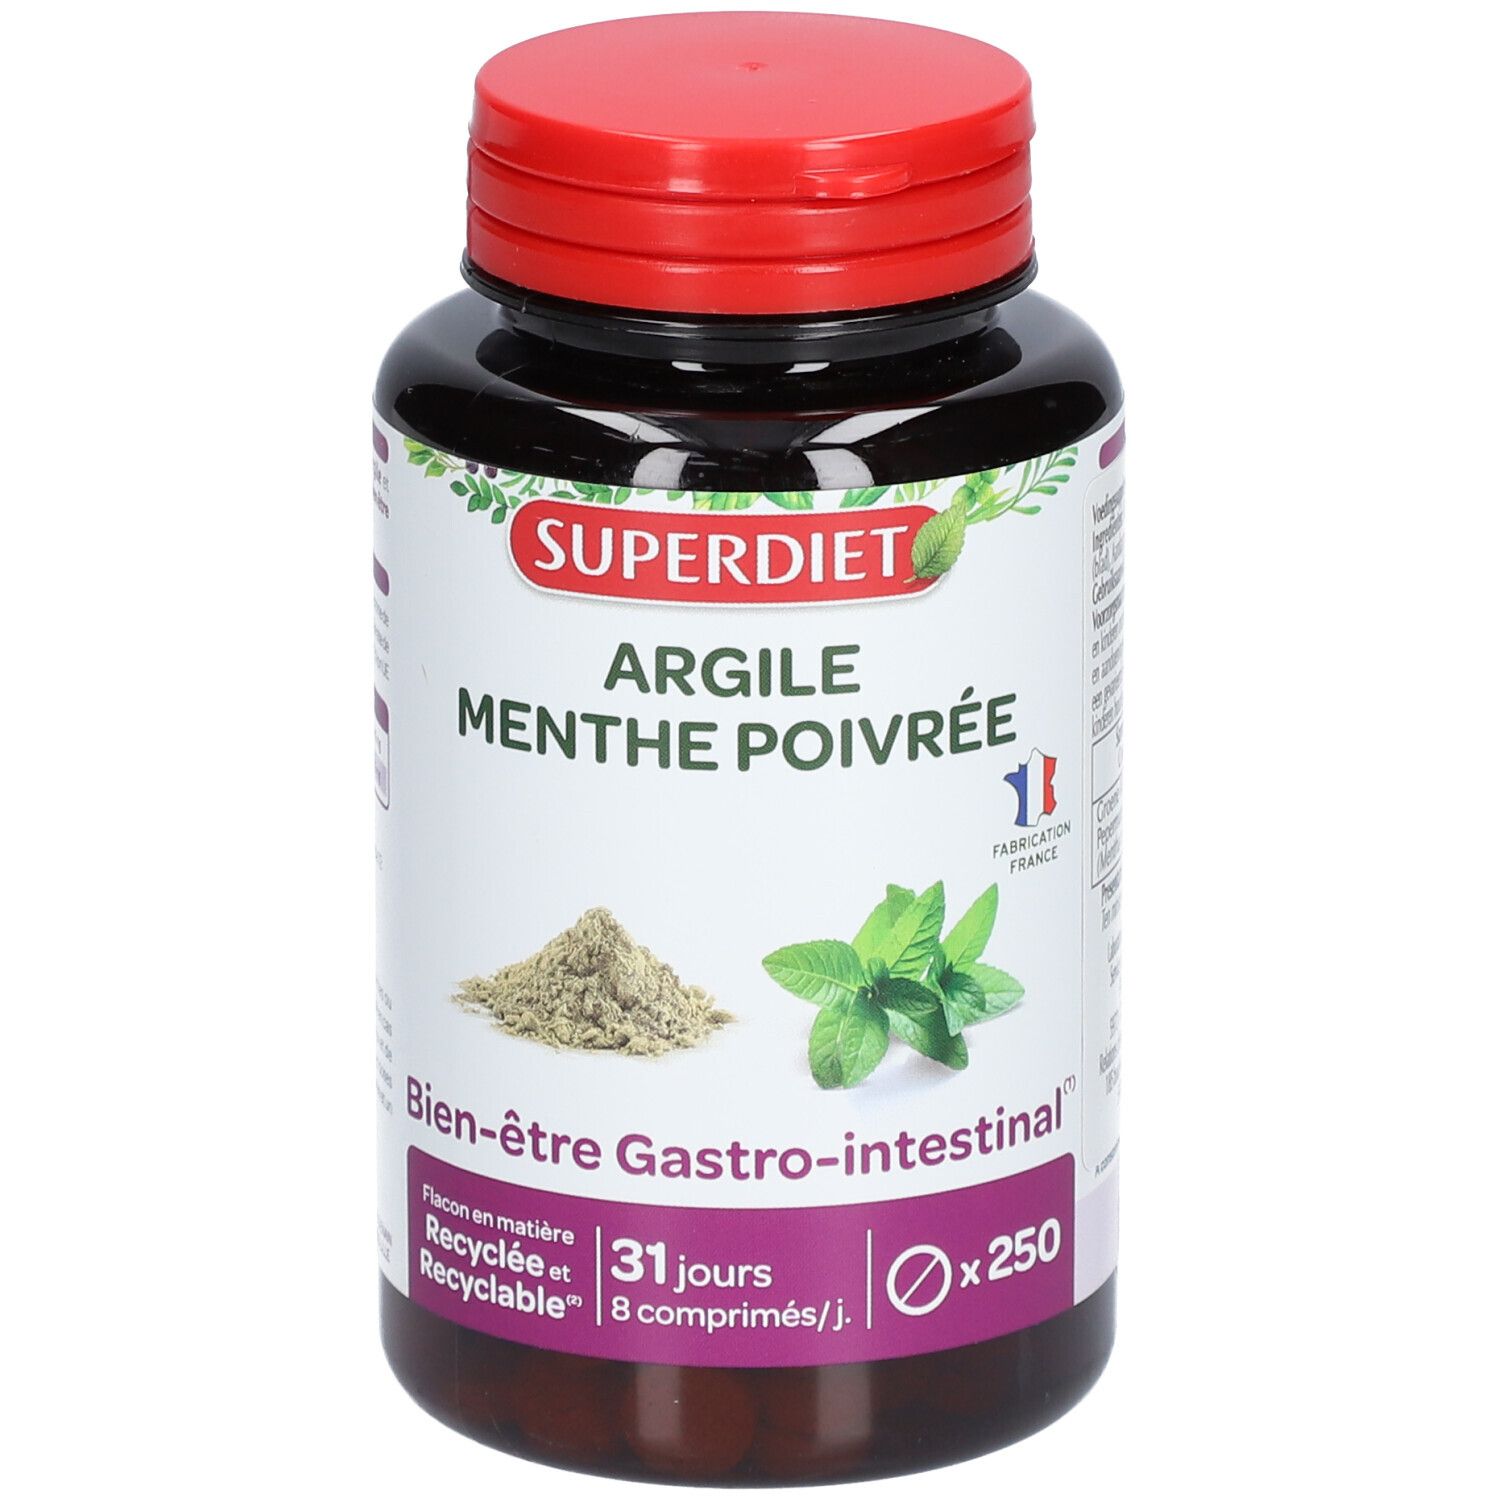 Argile Verte Montmorillonite et Menthe Poivrée, 250 comprimés